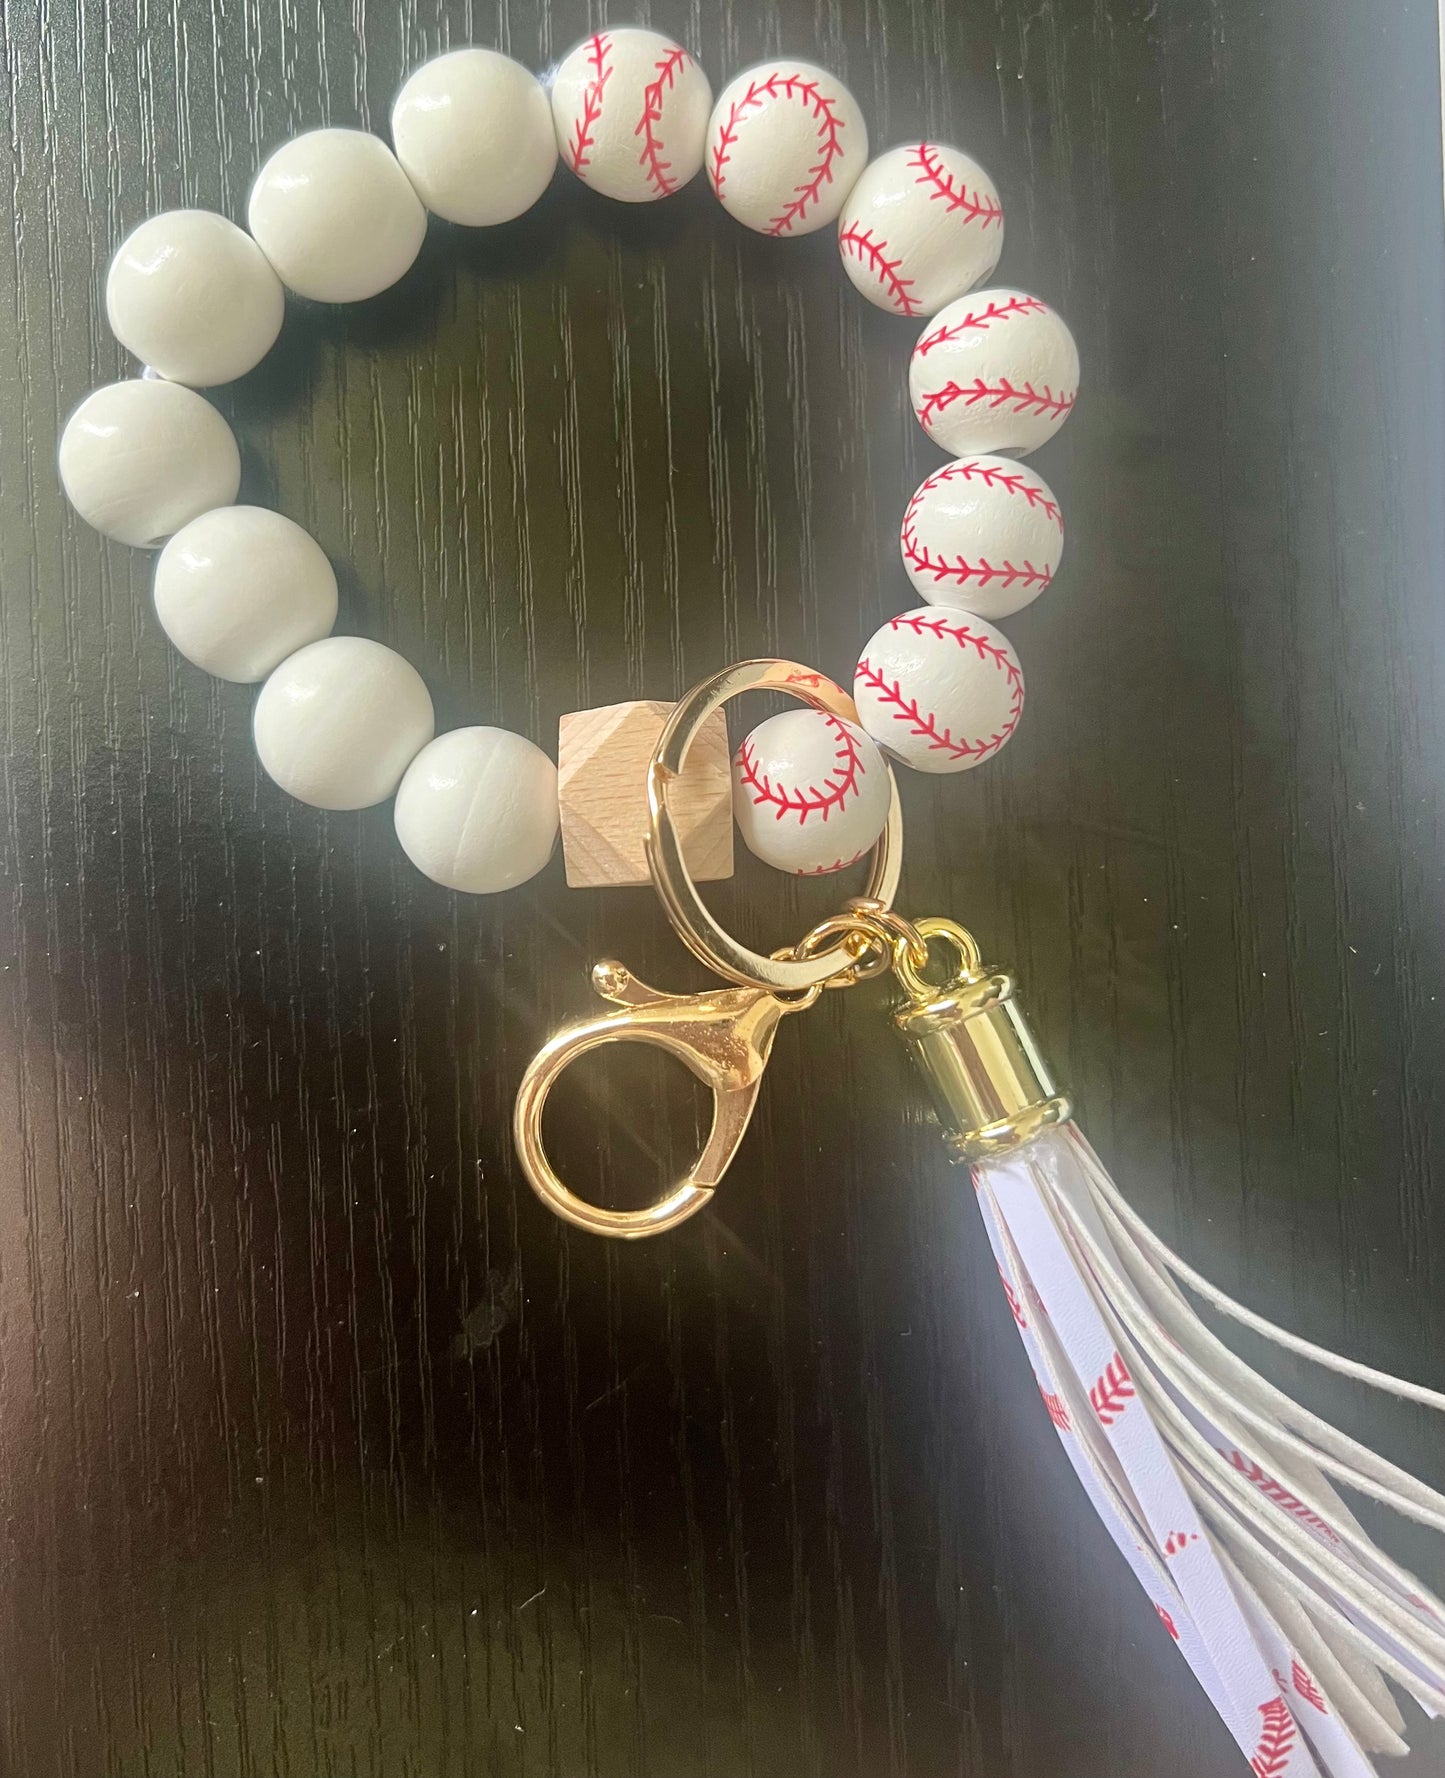 Baseball themed bracelet keychain